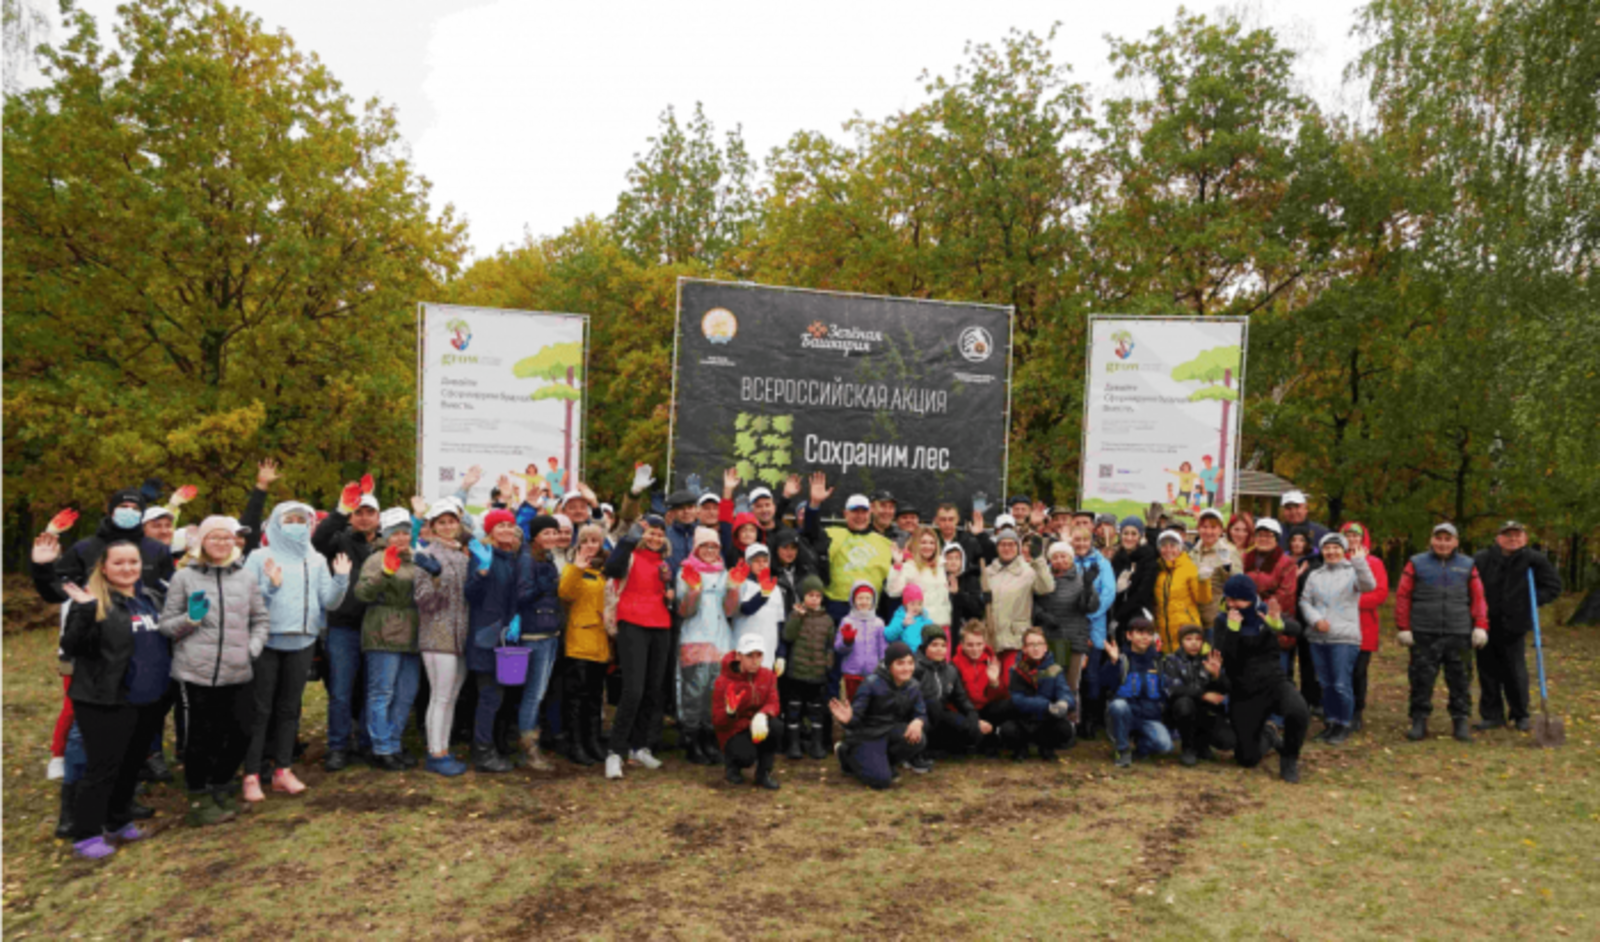 Башкортостан - лидер по количеству привлеченных на мероприятия по высадкам деревьев людей - Рослесхоз подвёл итоги акции «Сохраним лес»